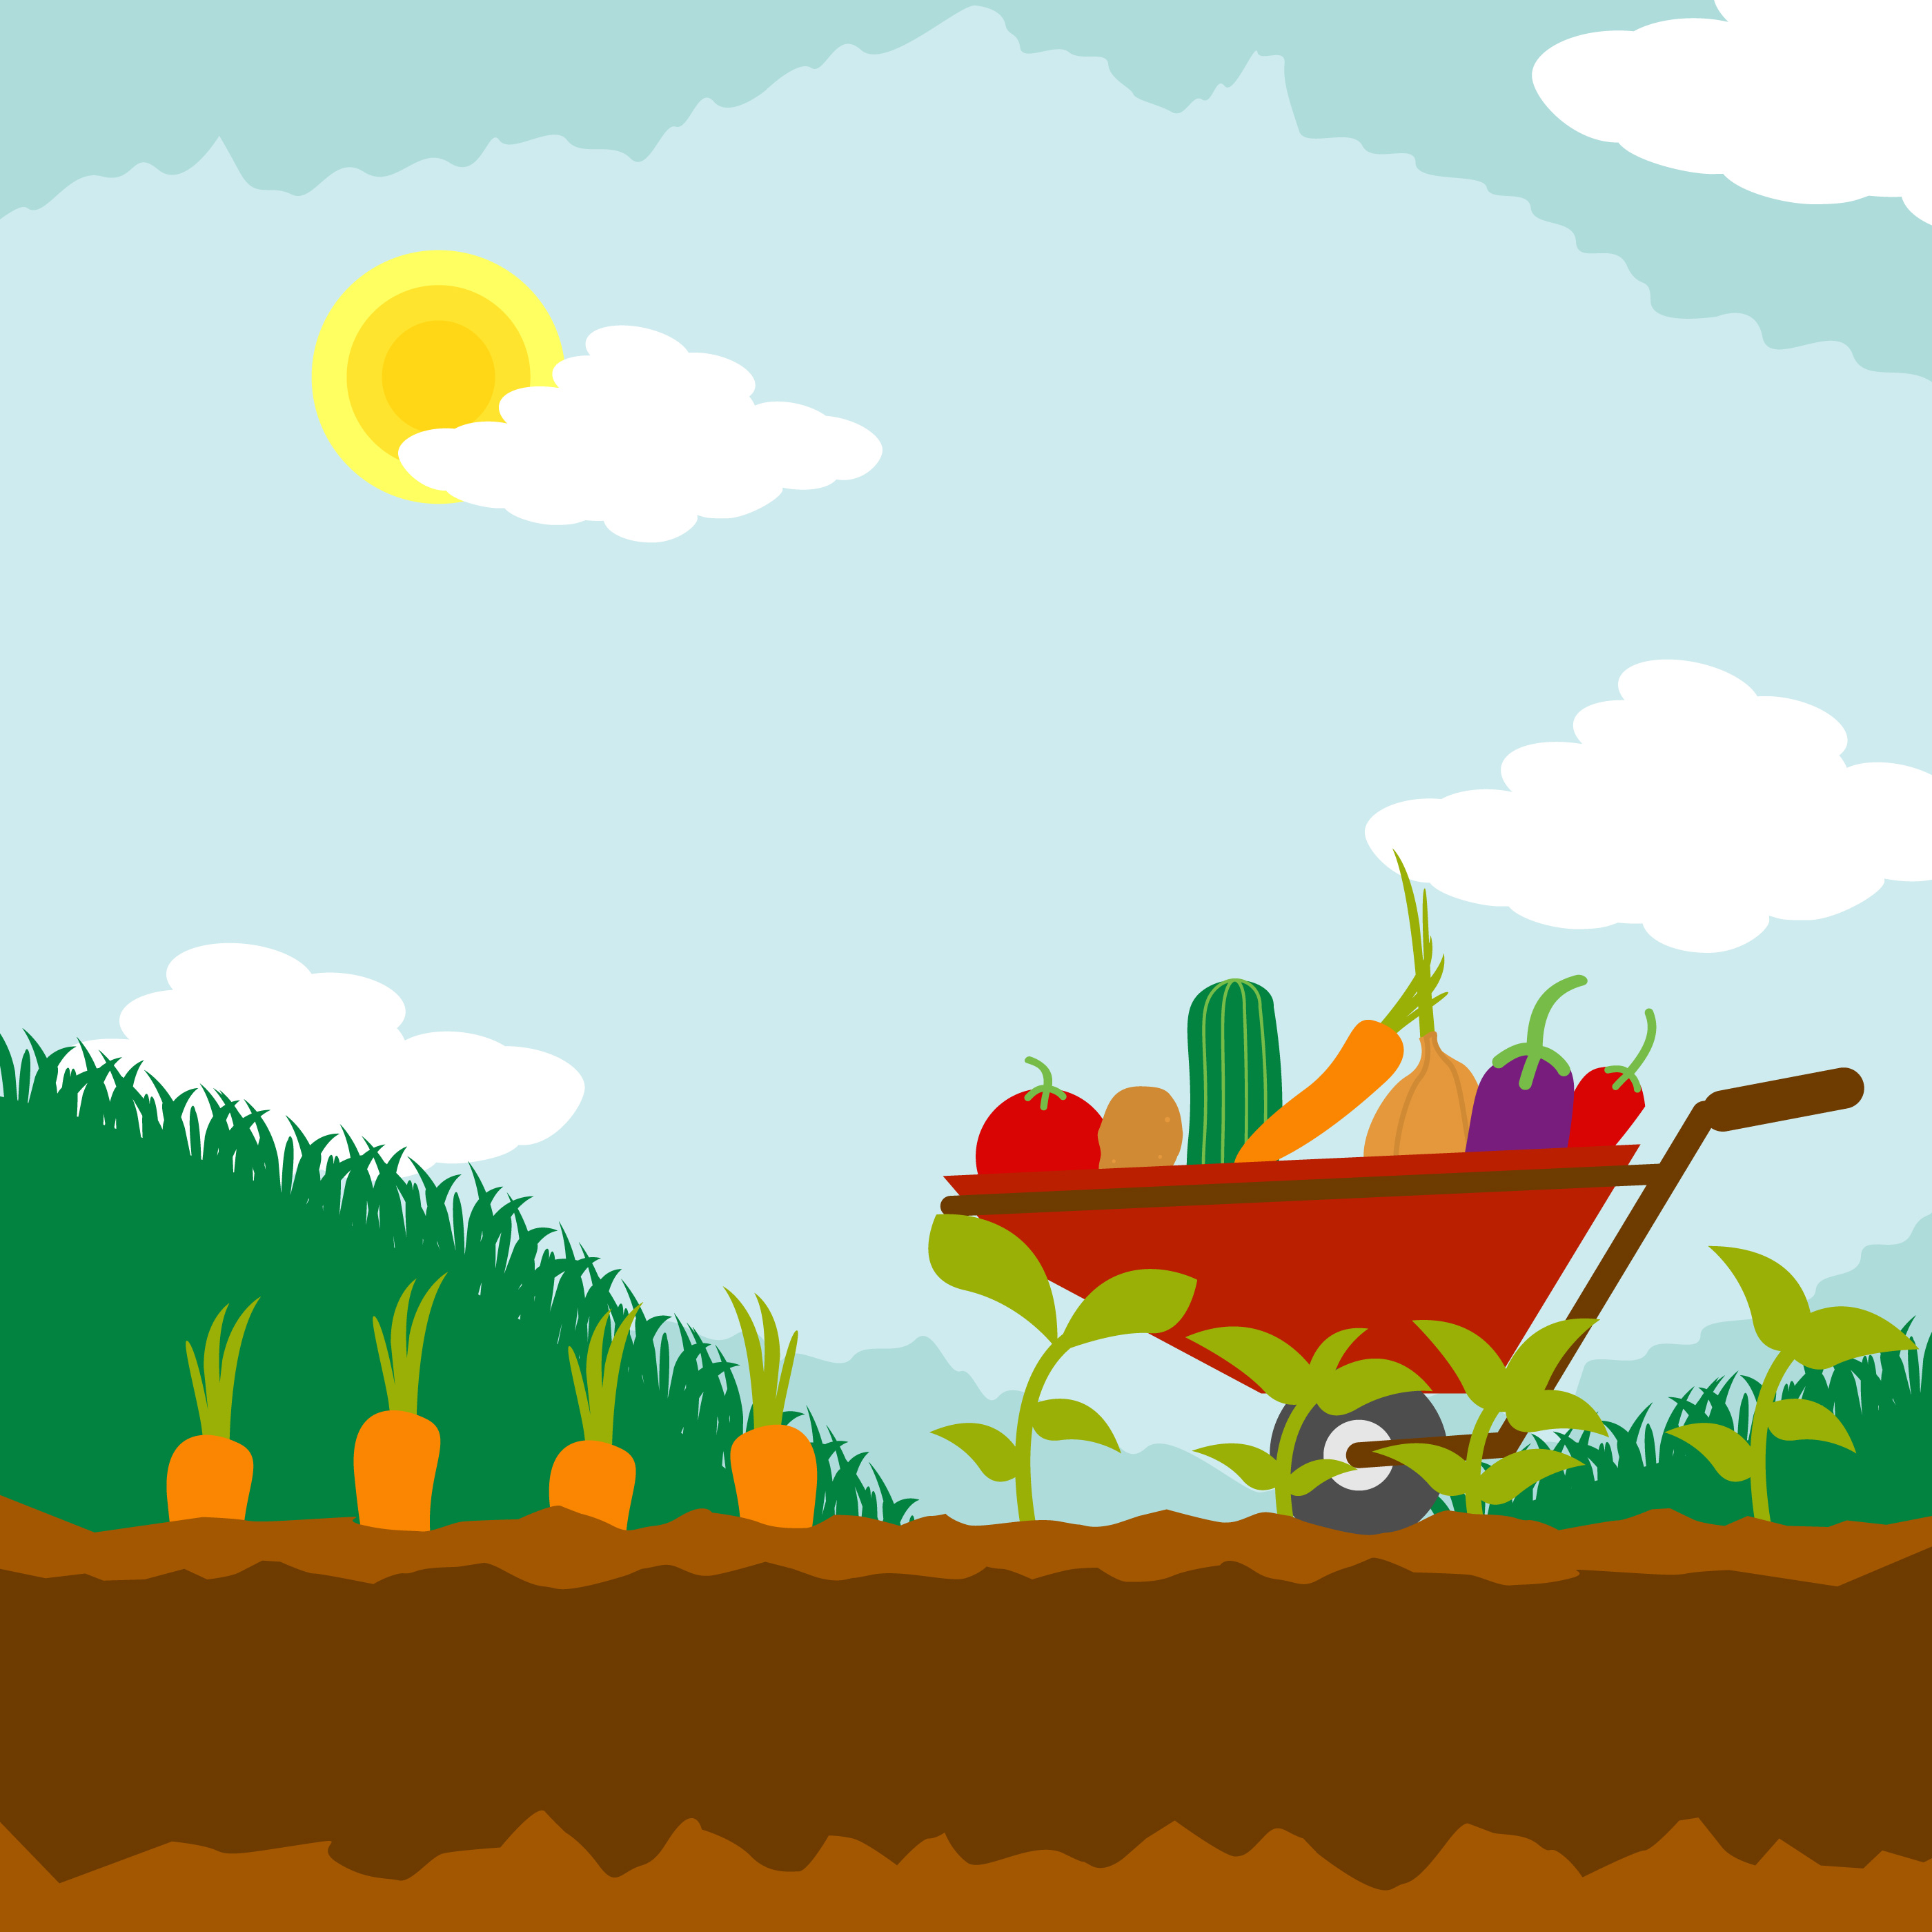 Download Vegetable Garden Illustration 202047 - Download Free ...